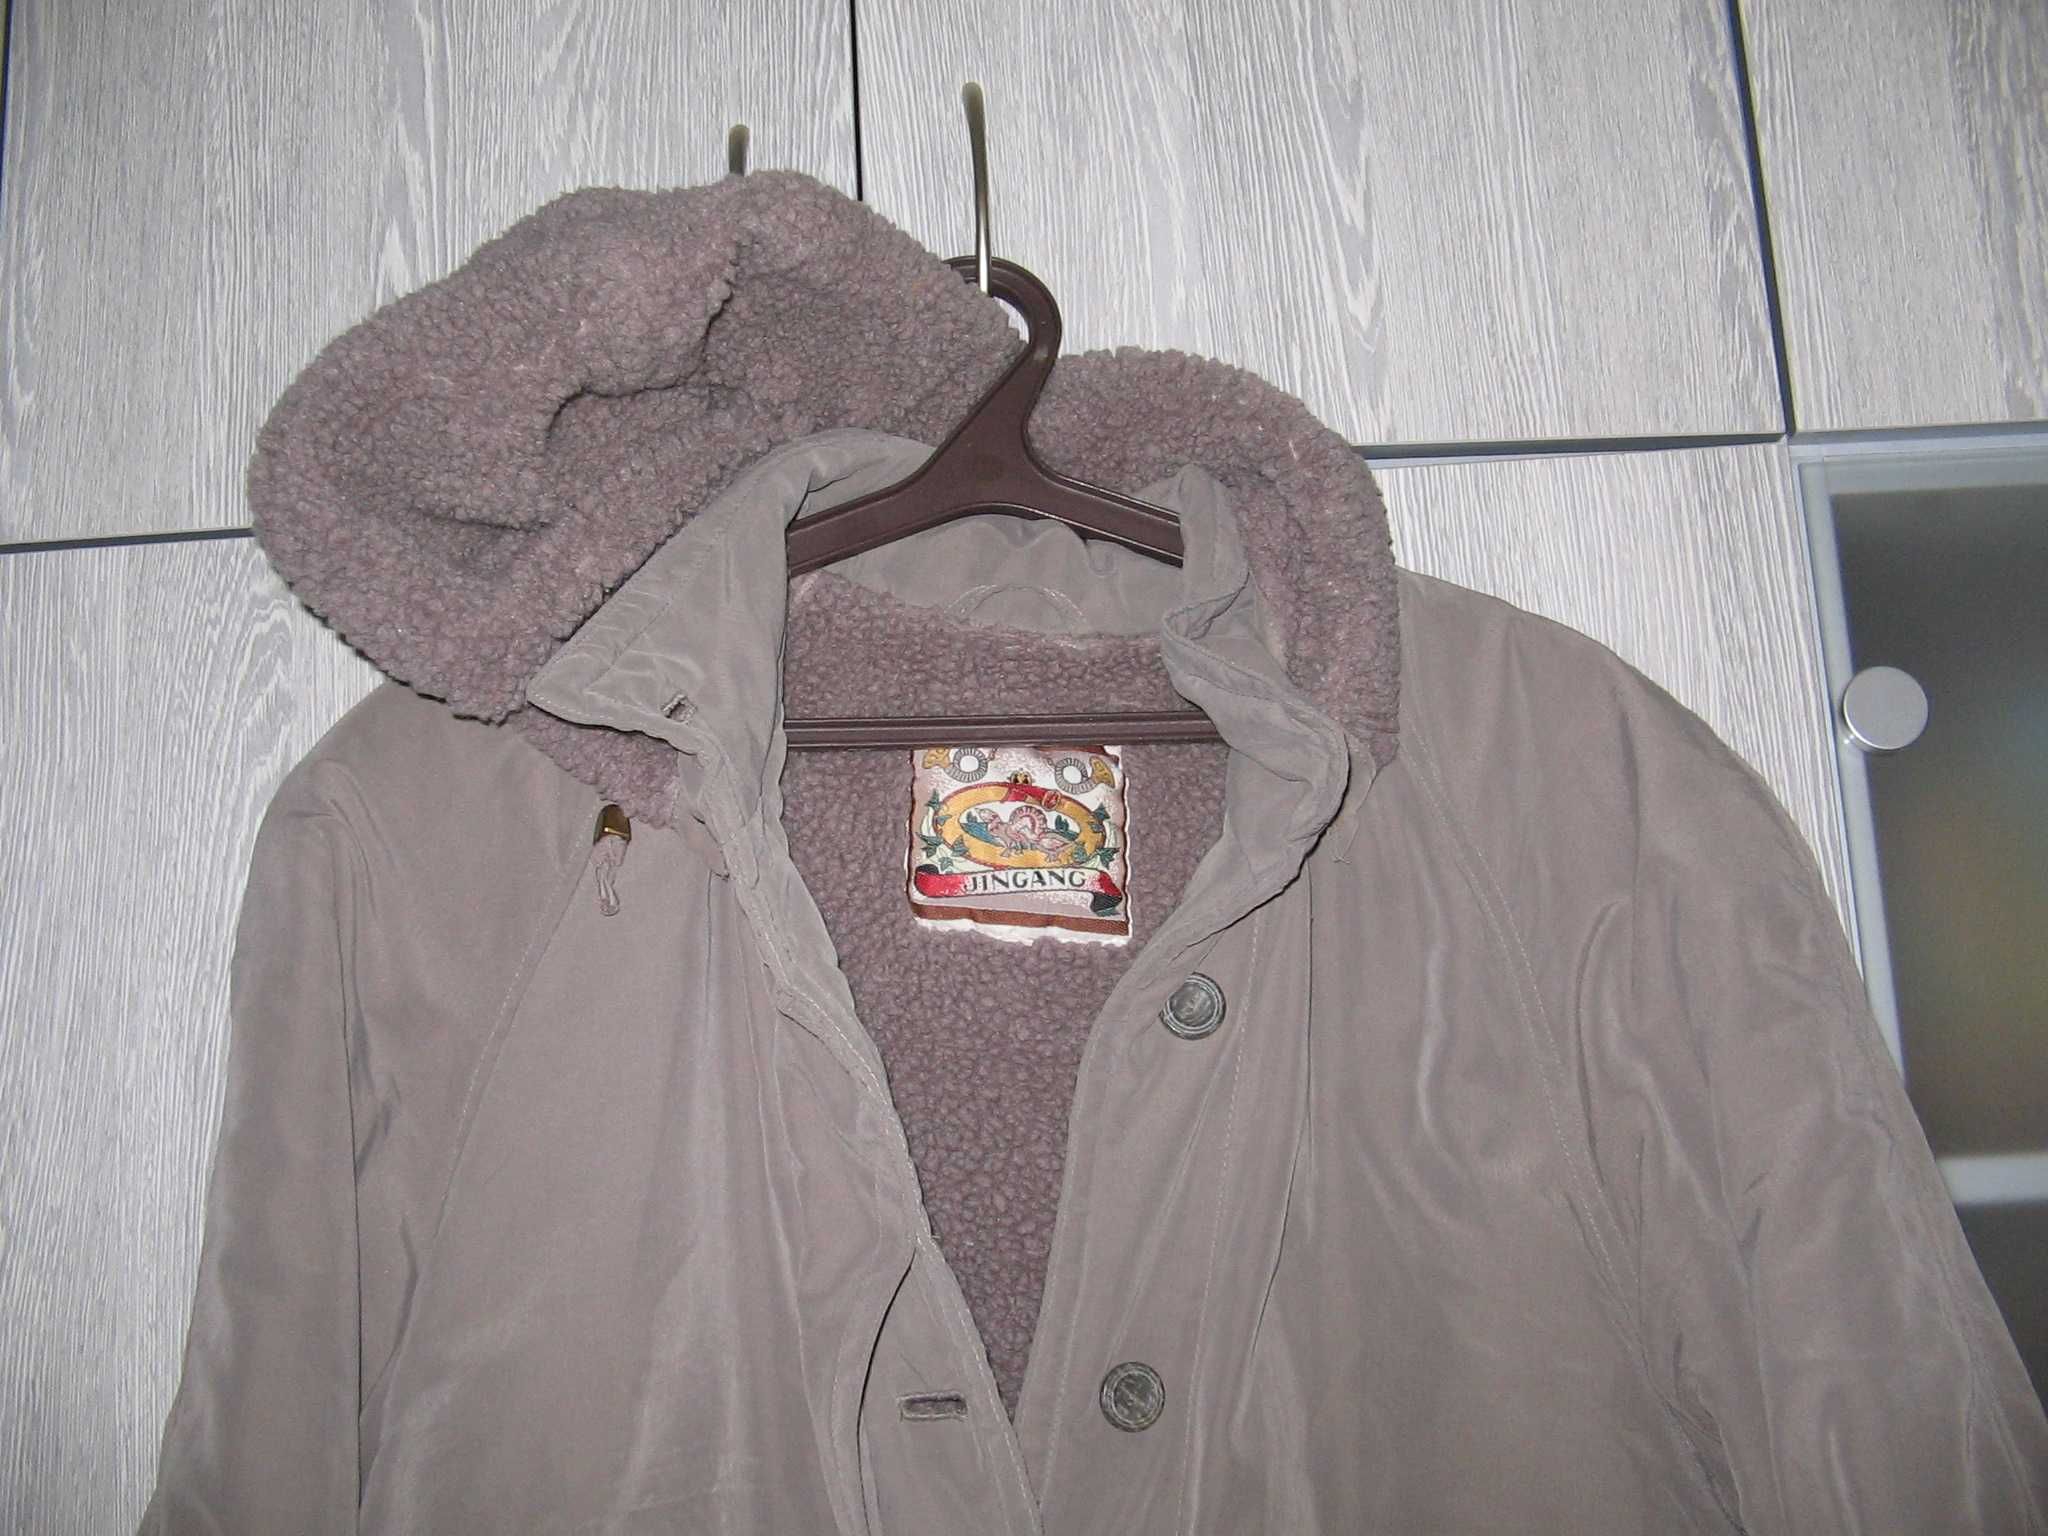 Пальто серое  на цигейке фирма Jingang